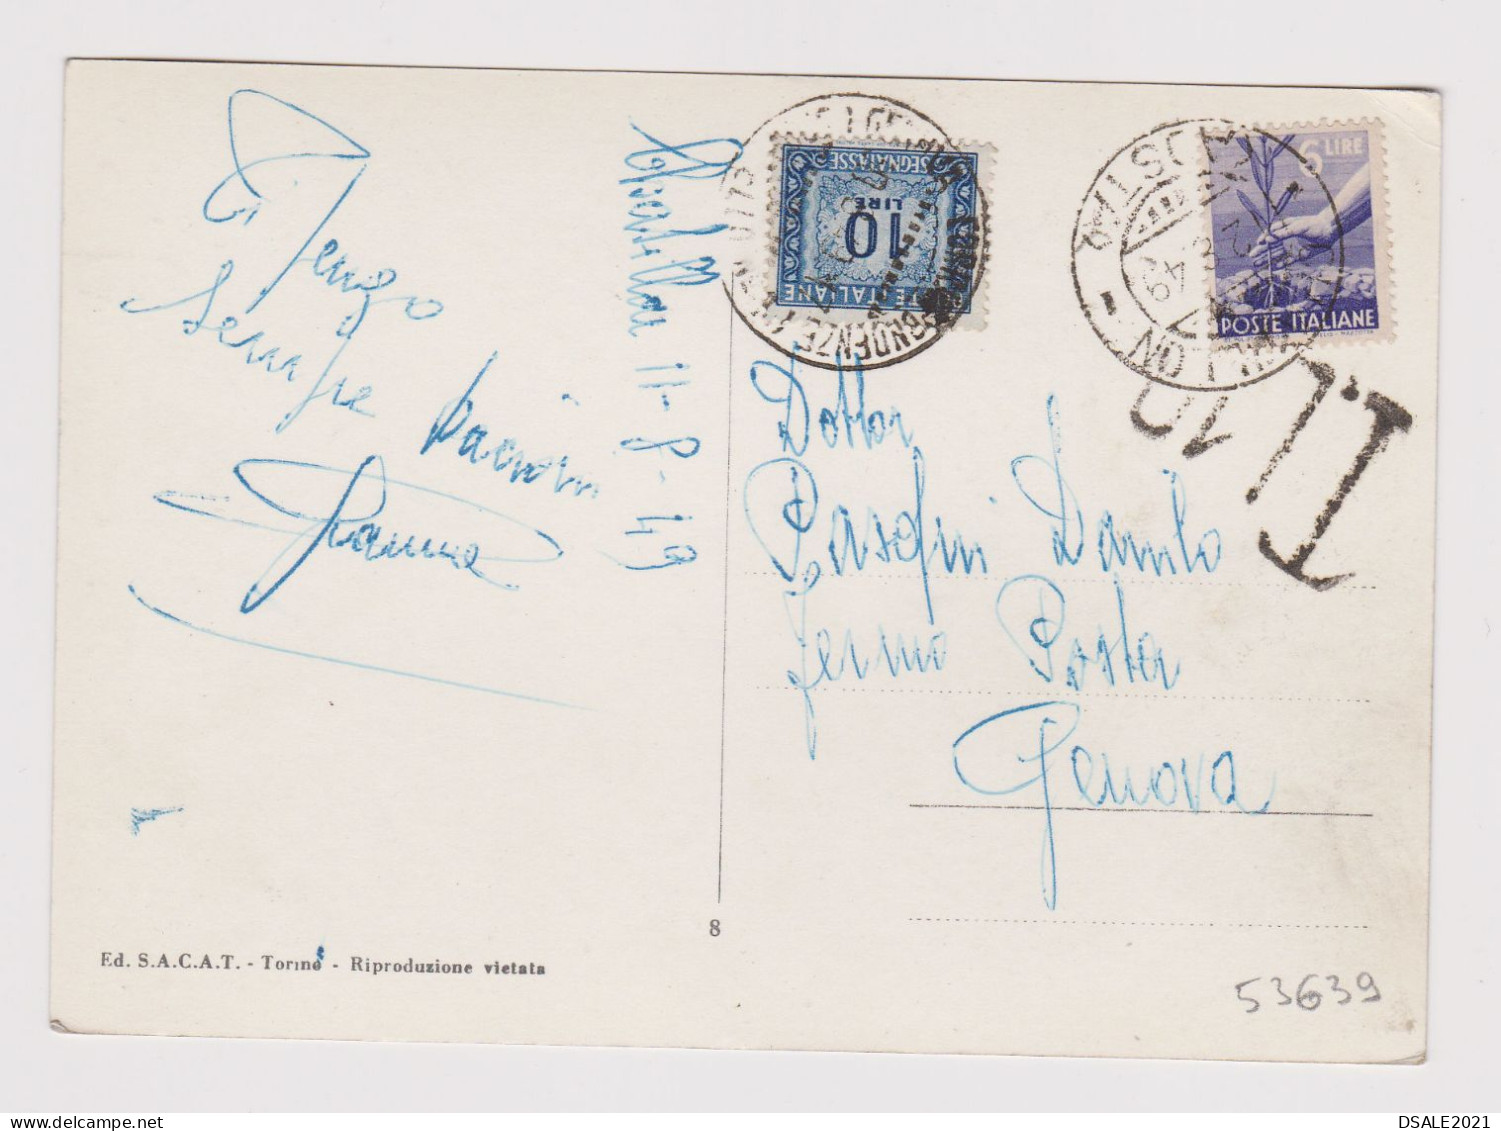 ITALY 1949 Pc W/6Lire Stamp AOSTA To GENOVA Postage Due 10Lire, Postcard St. VINCENT M.575 PIAZZALE DELLA FONTE /53639 - 1946-60: Marcofilia